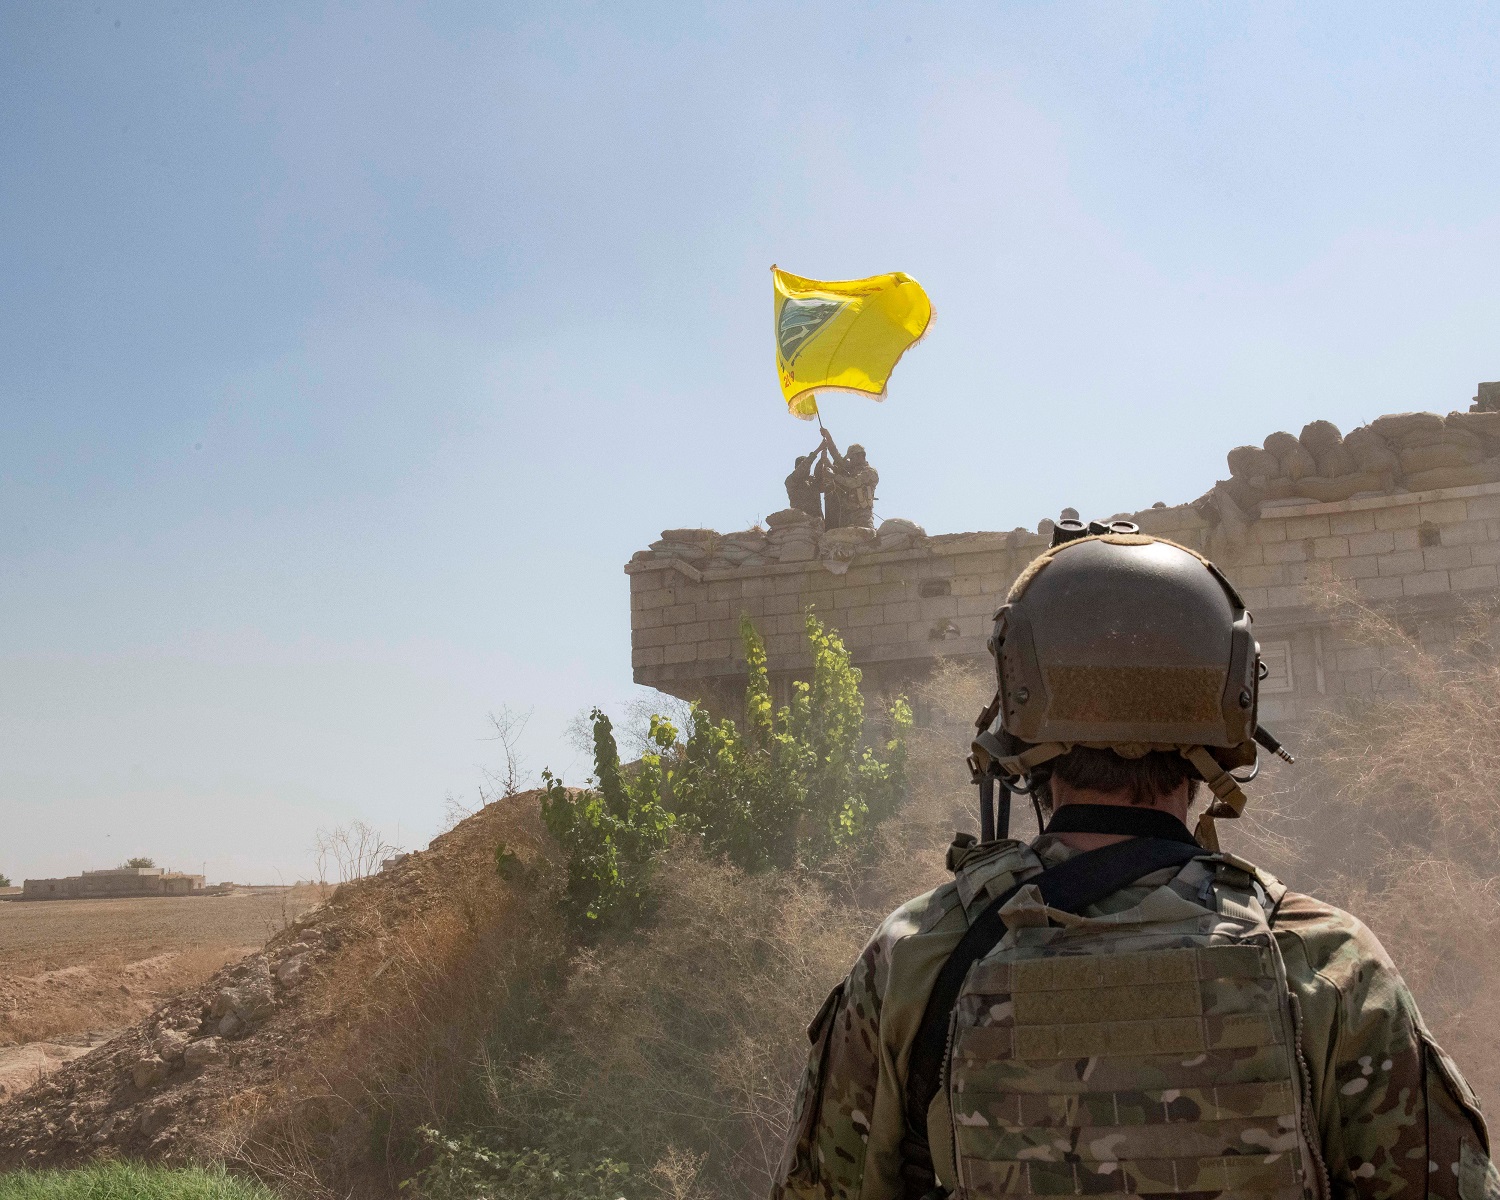 جندي أميركي يشرف على أفراد من قوات سوريا الديمقراطية أثناء قيامهم بهدم حصن.سوريا.21 سبتمبر 2019. (رويترز)